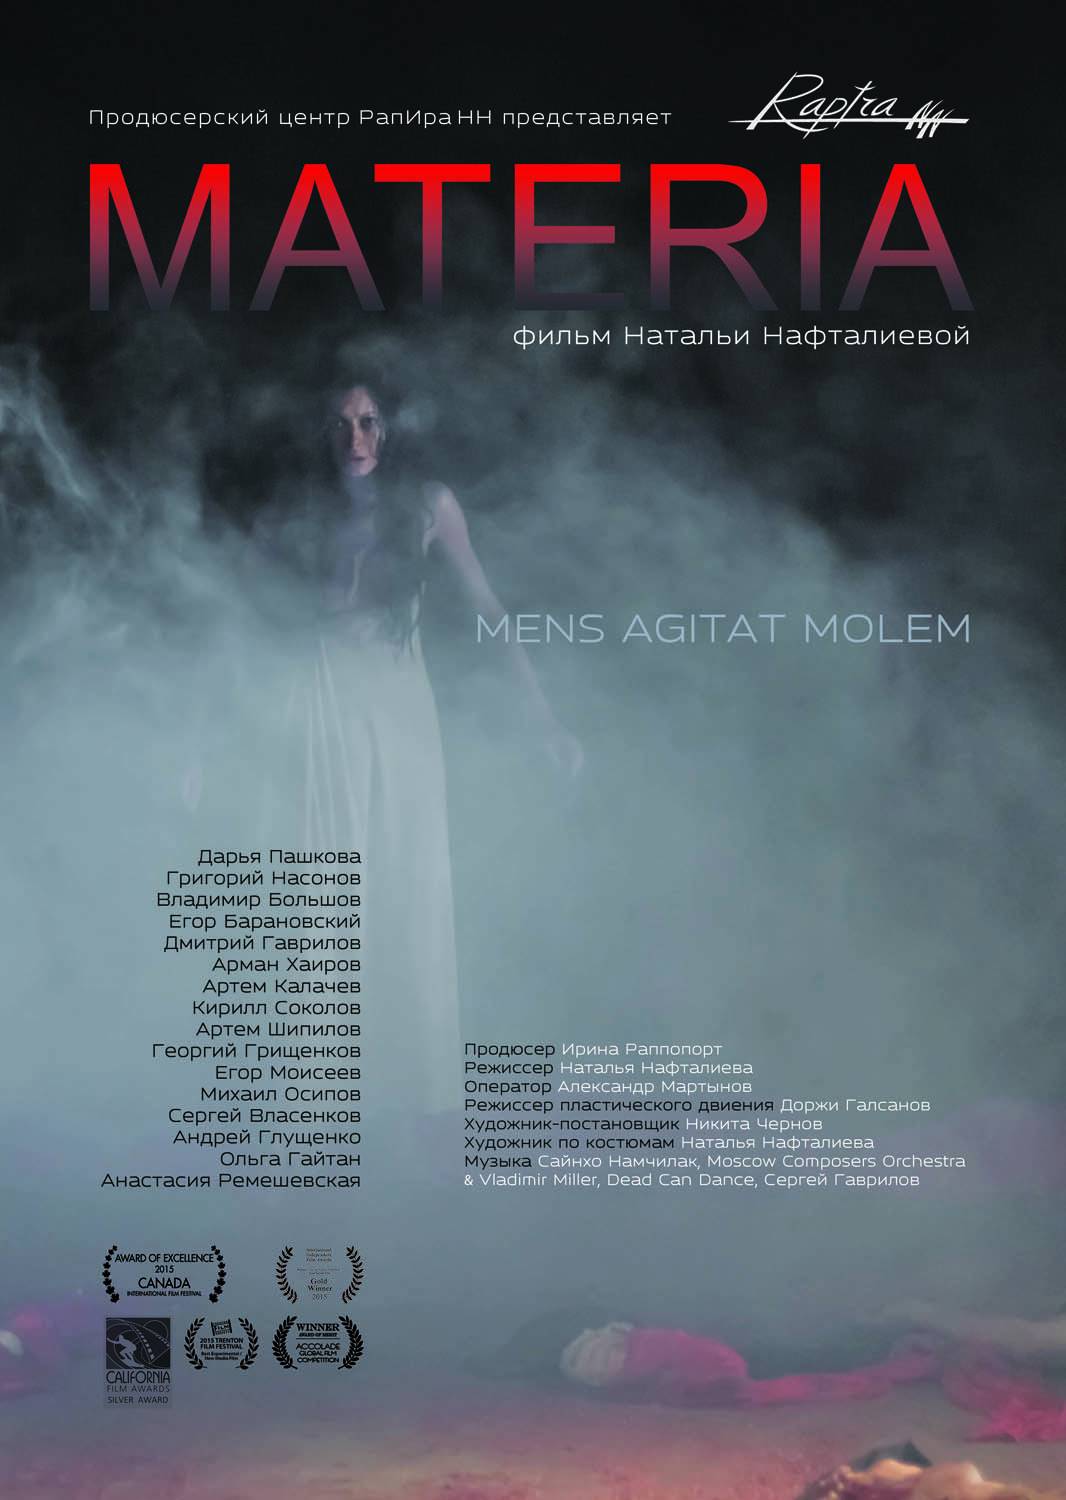 Материя / Materia (2014) отзывы. Рецензии. Новости кино. Актеры фильма Материя. Отзывы о фильме Материя